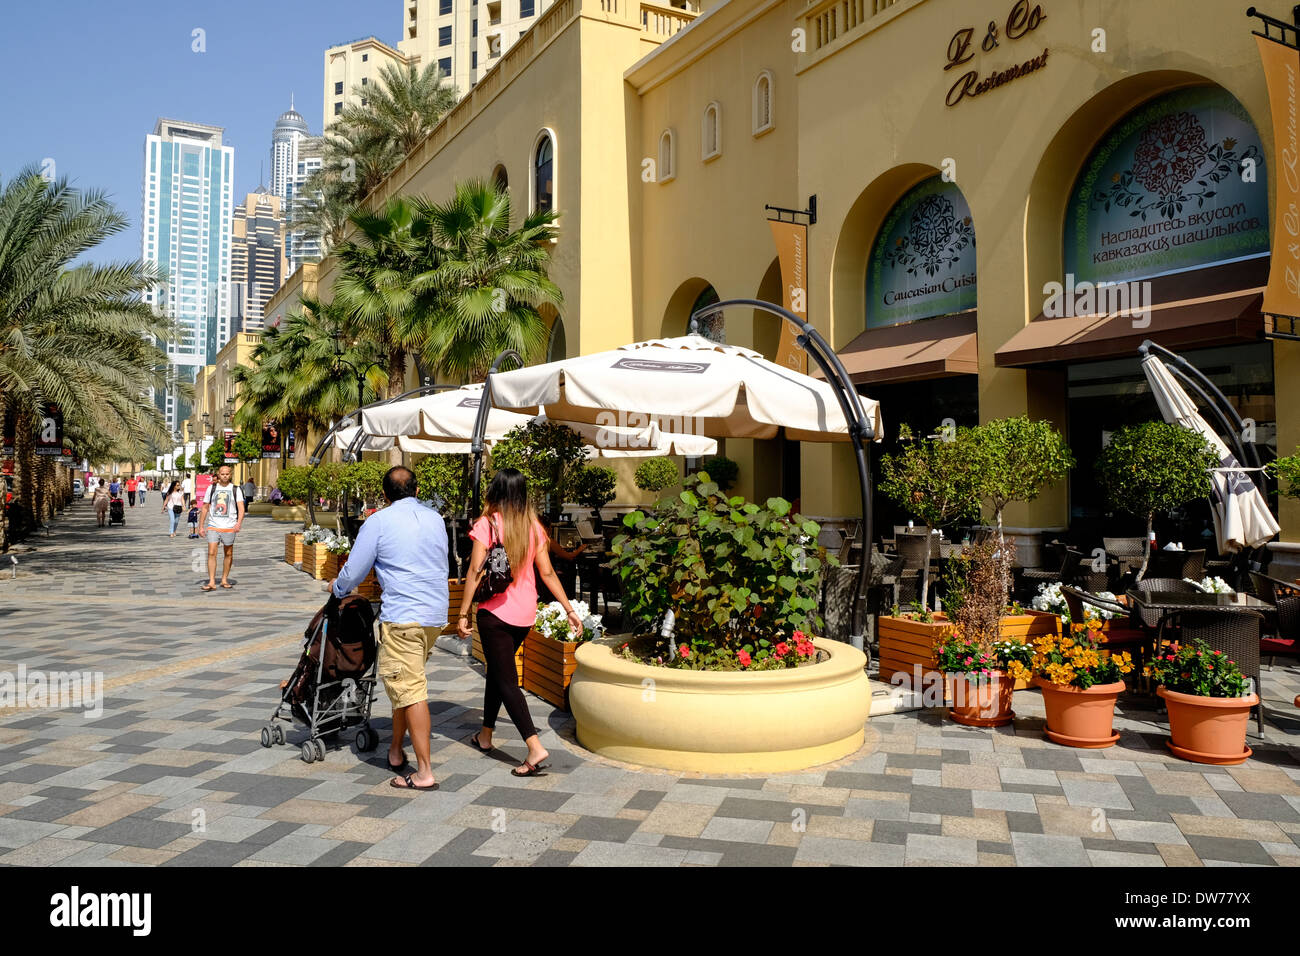 El paseo de tiendas y restaurantes en la calle de la playa de Jumeirah Residences (JBR) en Dubai, Emiratos Árabes Unidos Foto de stock